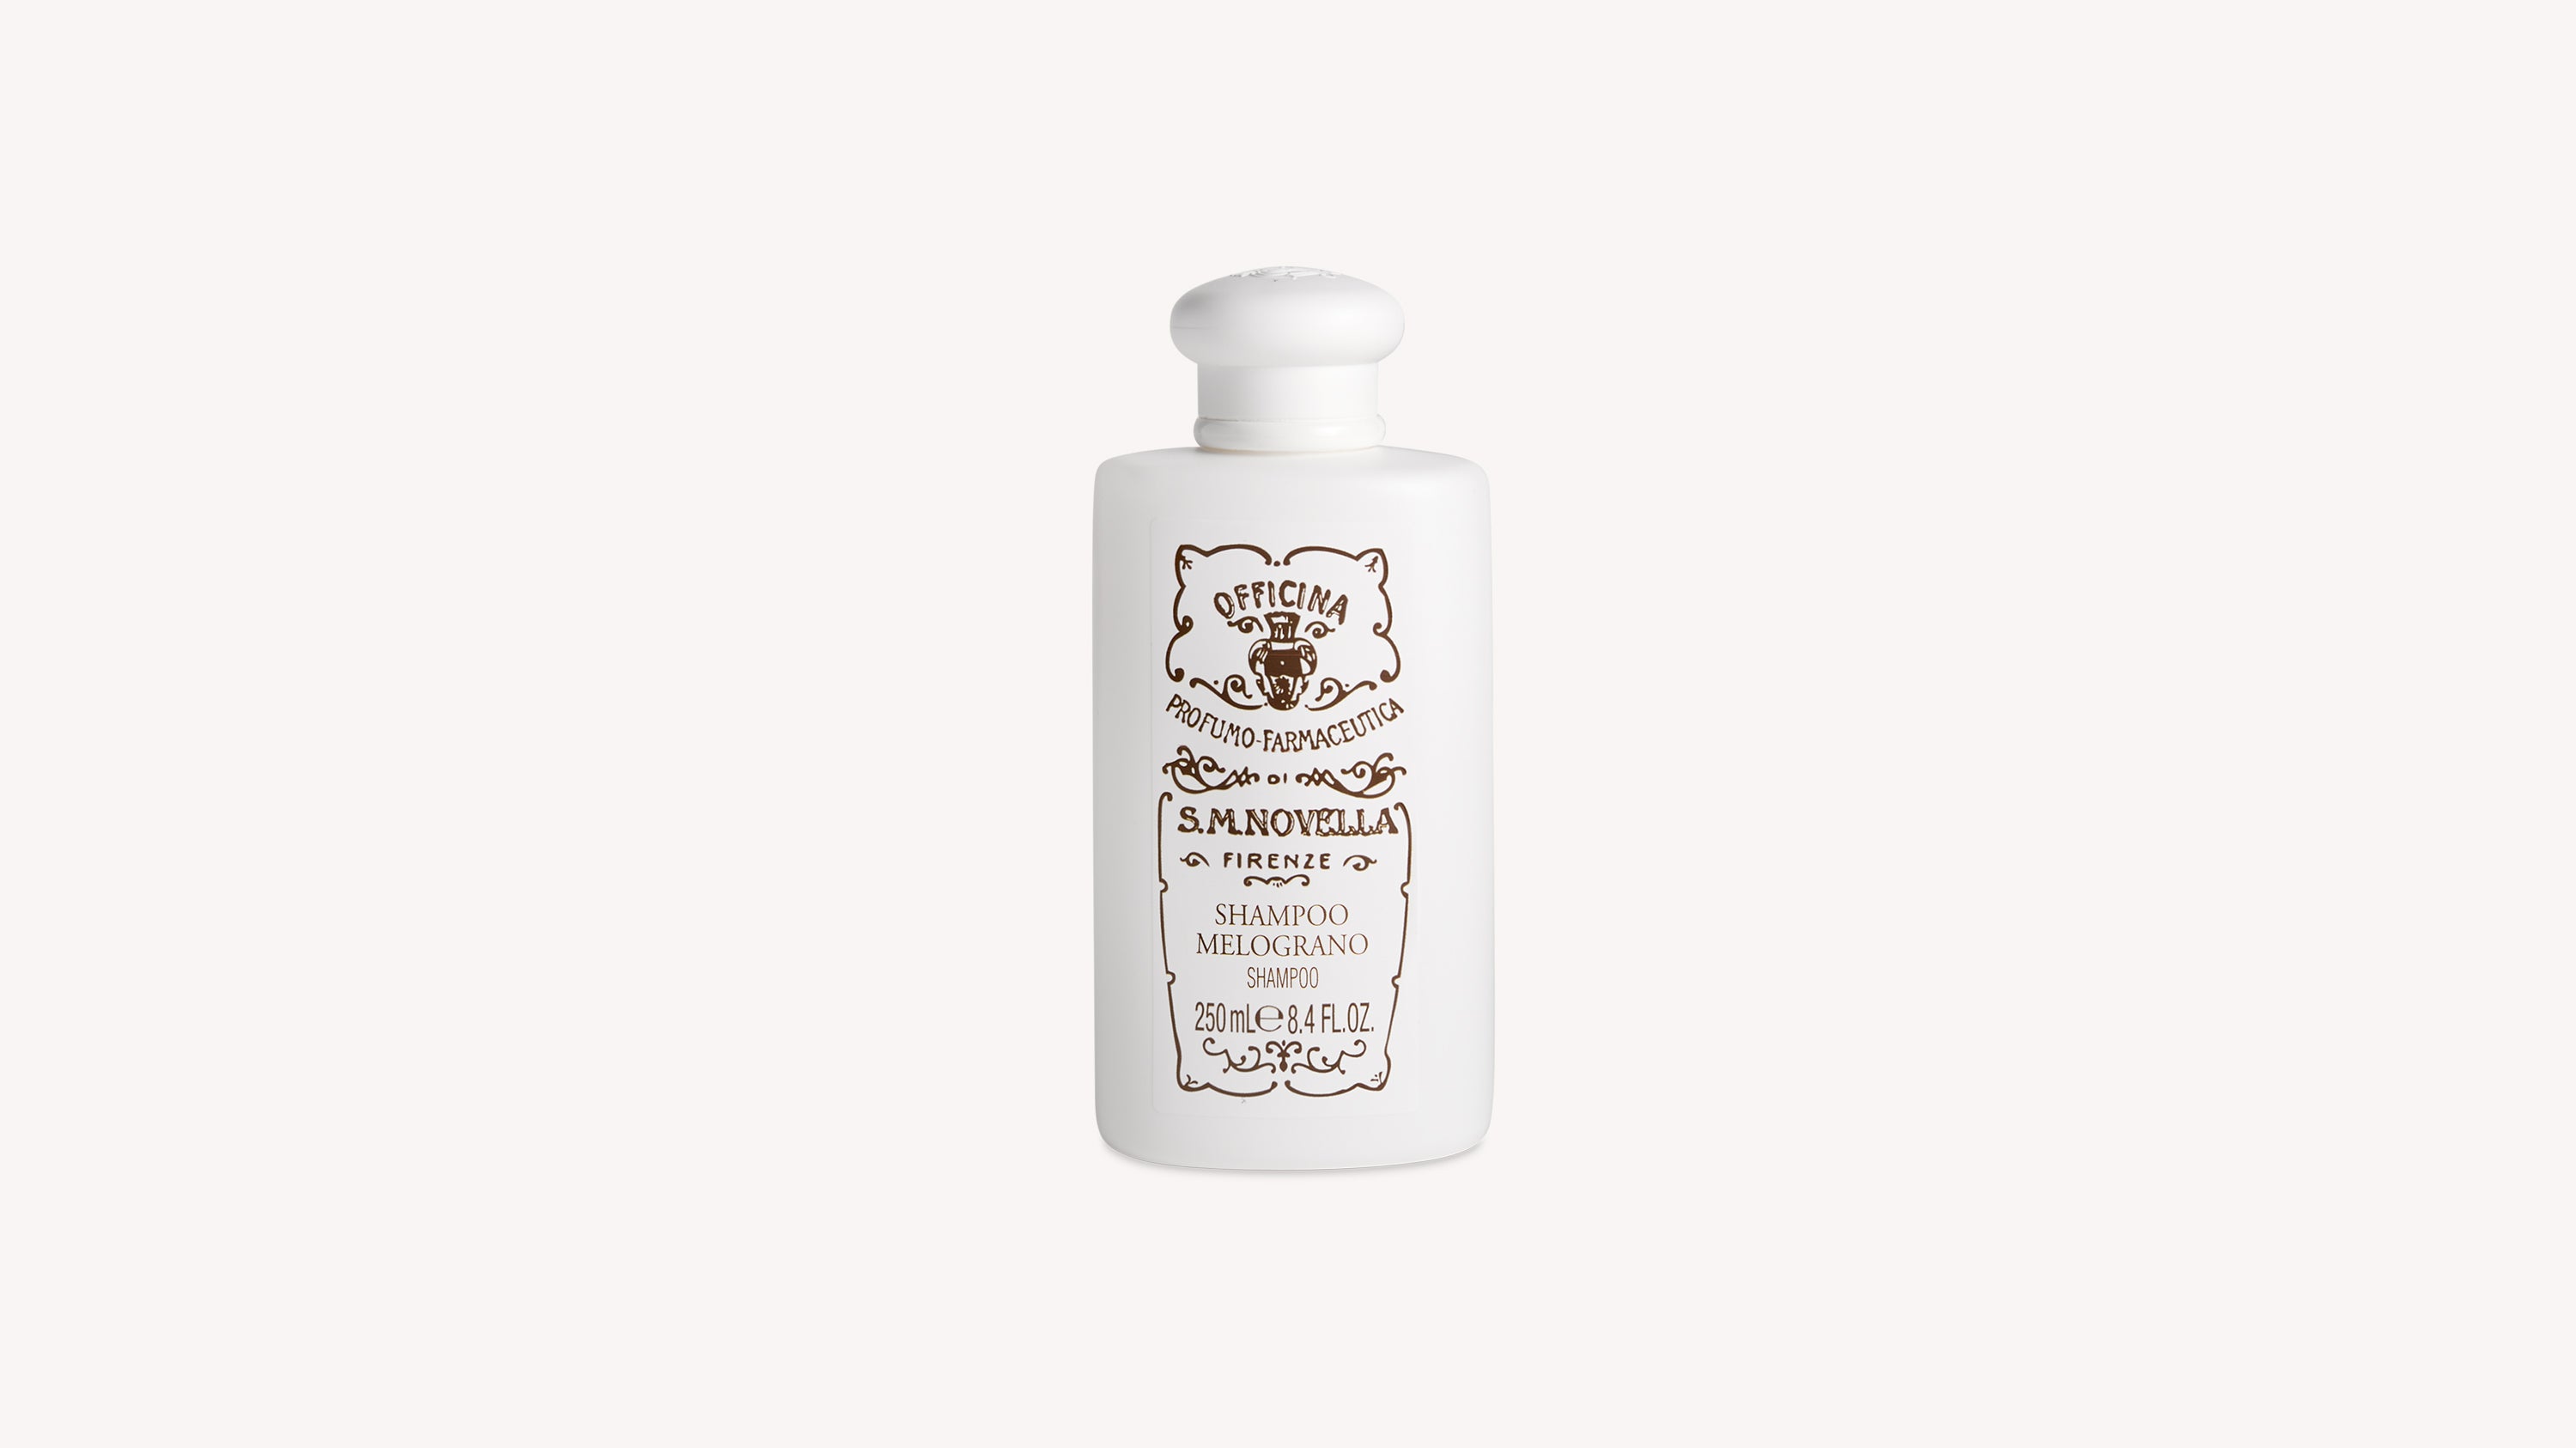 Melograno Shampoo Body Care officina-smn-usa-ca.myshopify.com Officina Profumo Farmaceutica di Santa Maria Novella - US